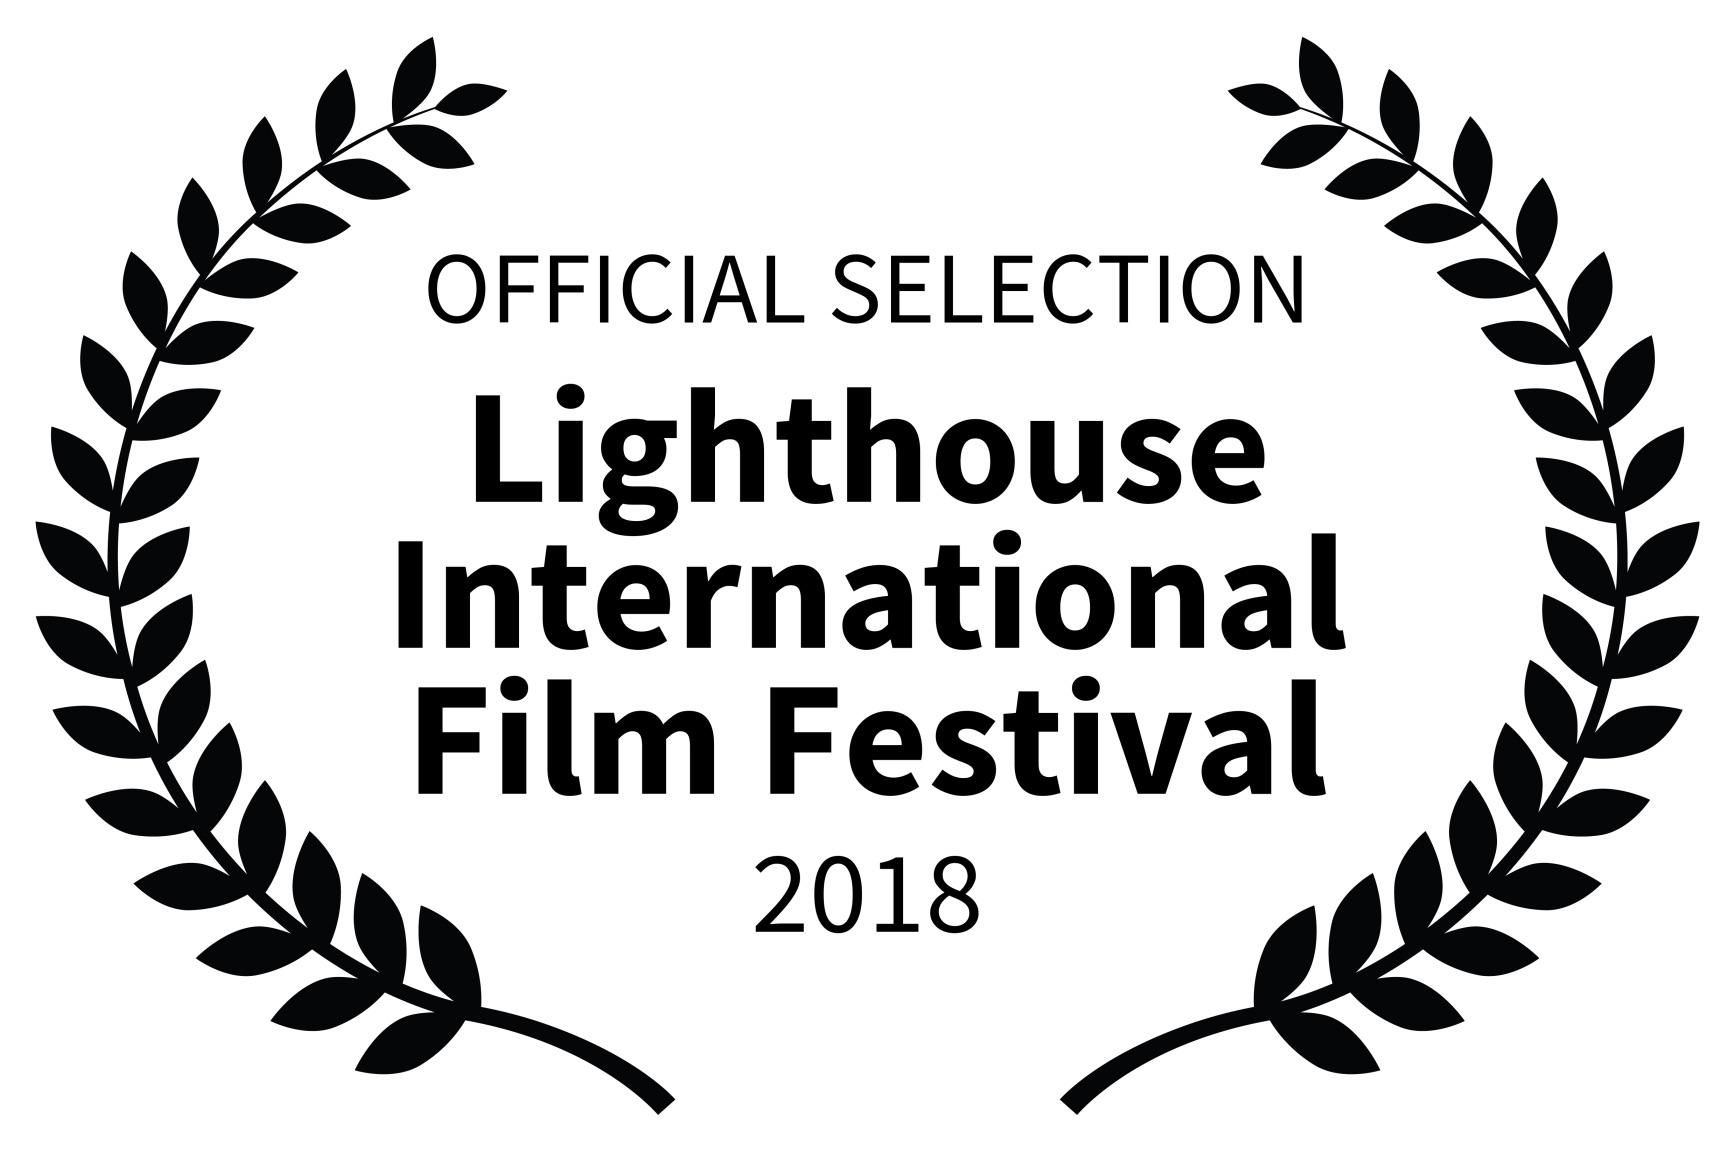 OFFICIAL SELECTION - Lighthouse International Film Festival - 2018.jpg